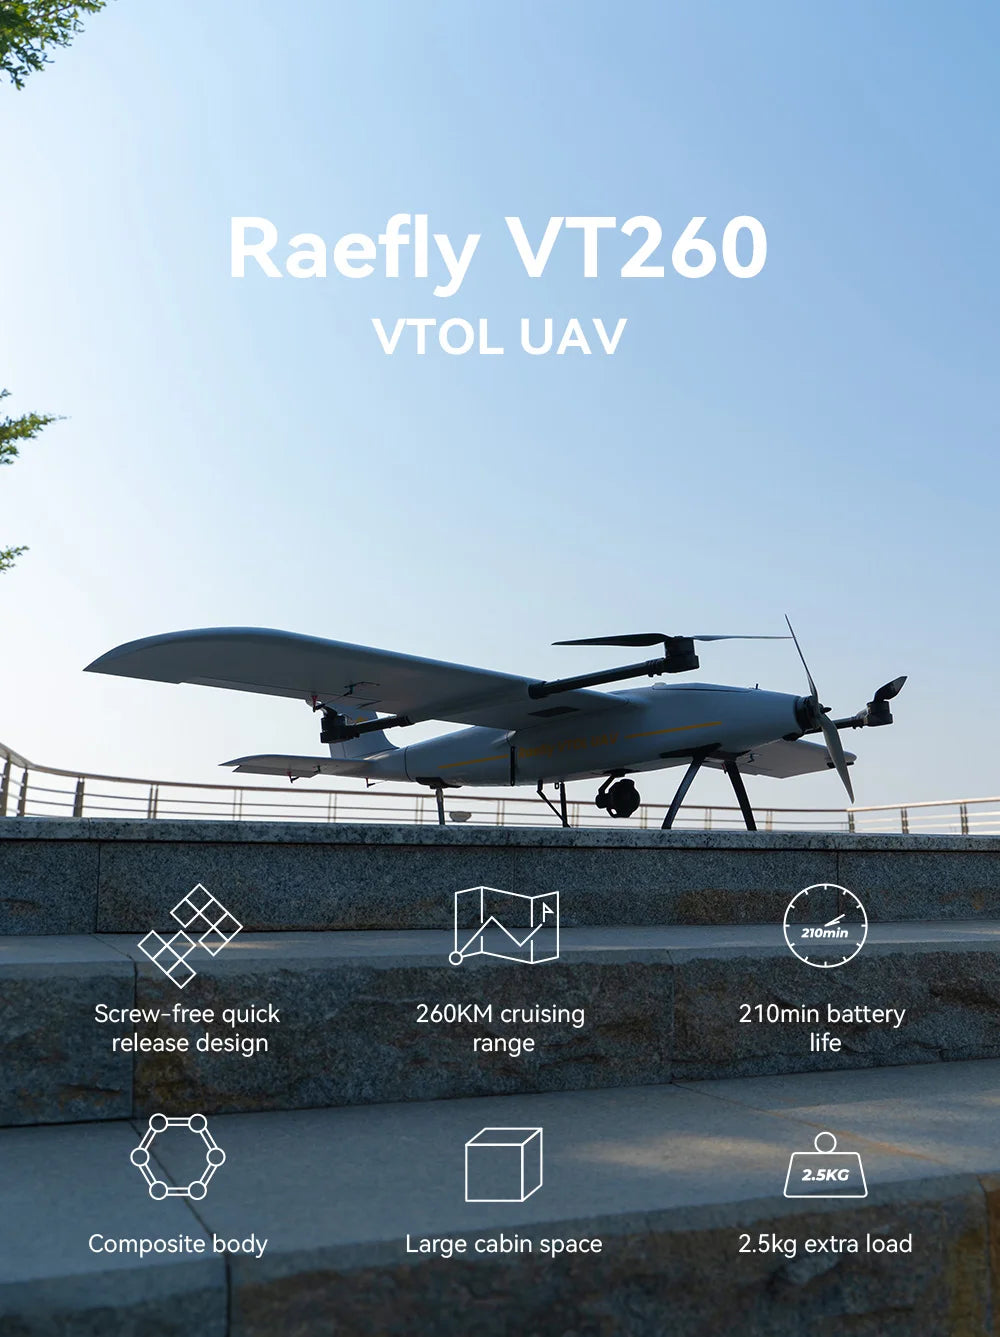 CUAV Raefly VT260 VTOL, Raefly VT260 VTOL UAV 210min Screw-free quick